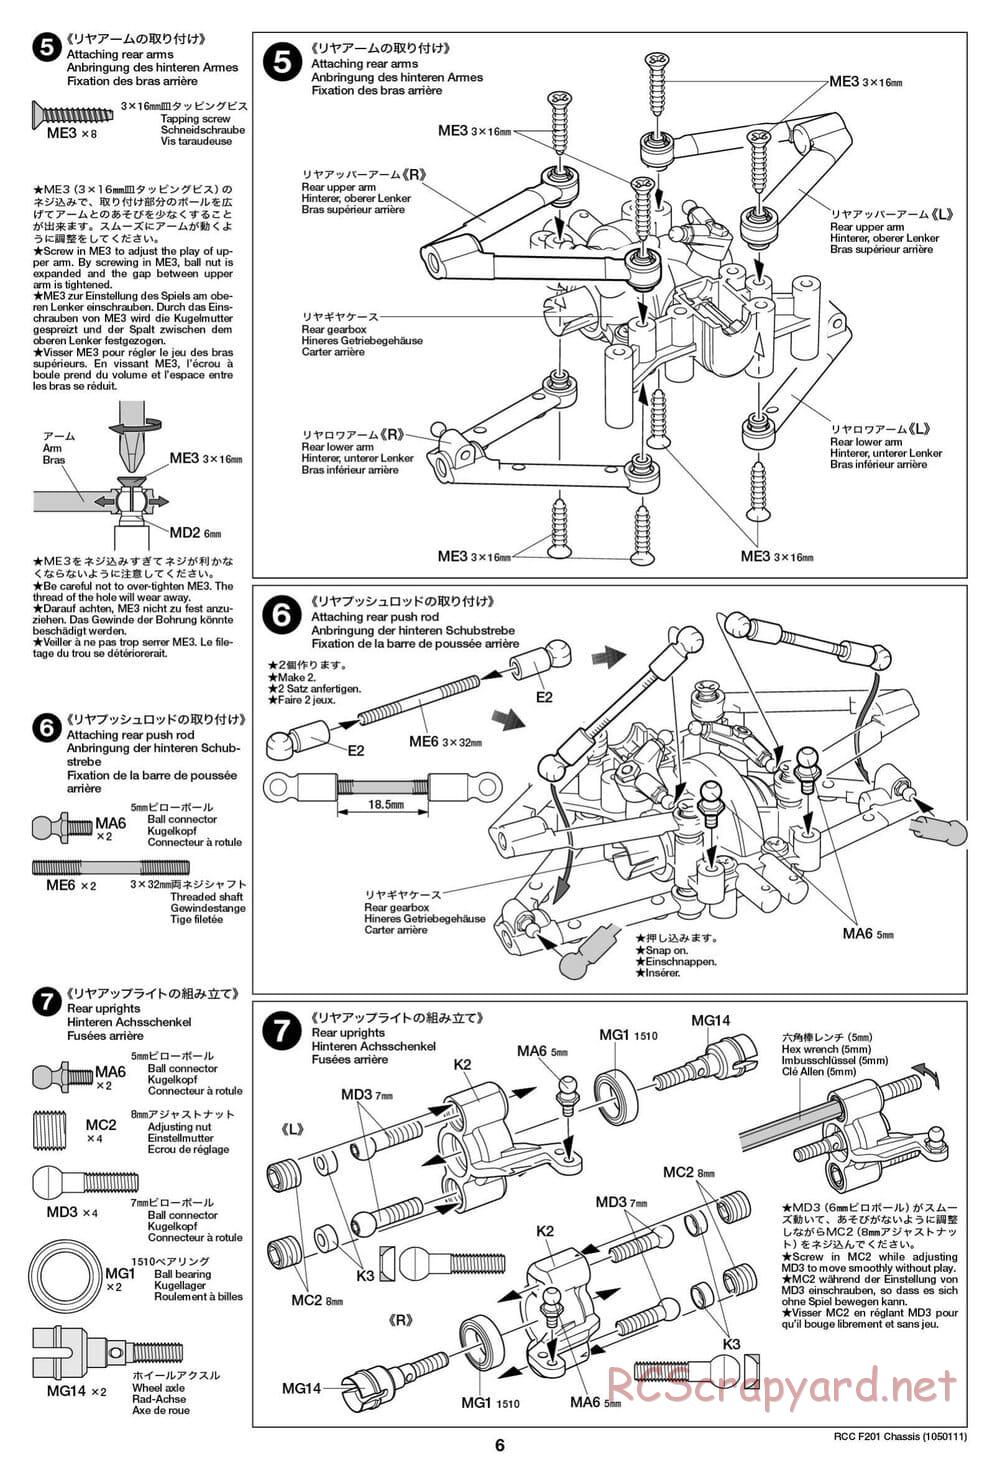 Tamiya - F201 Chassis - Manual - Page 6